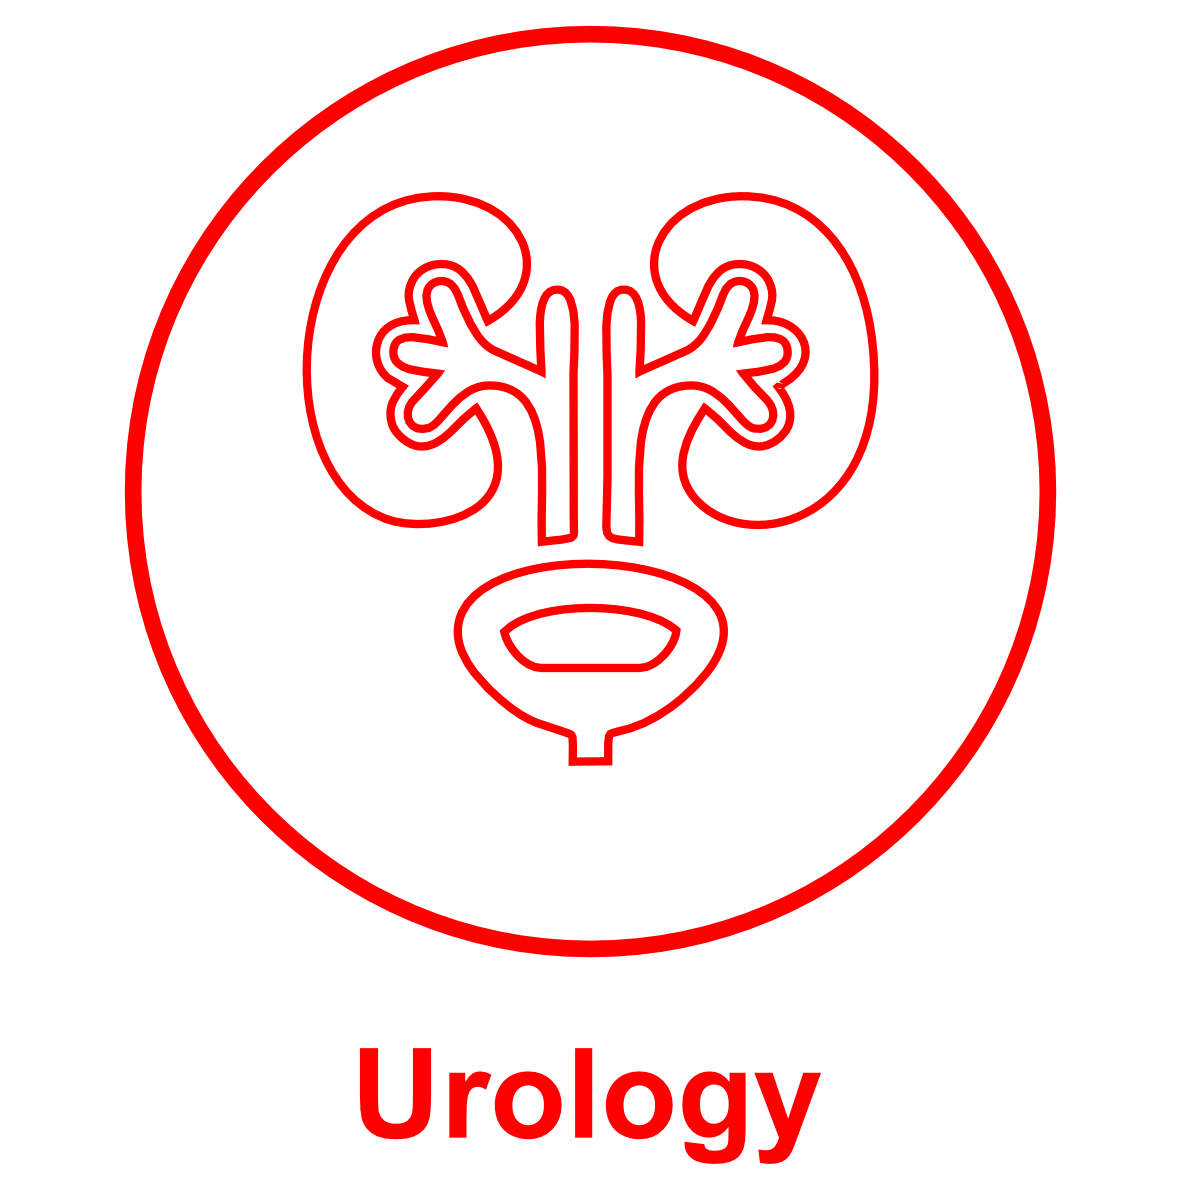 1 Urology